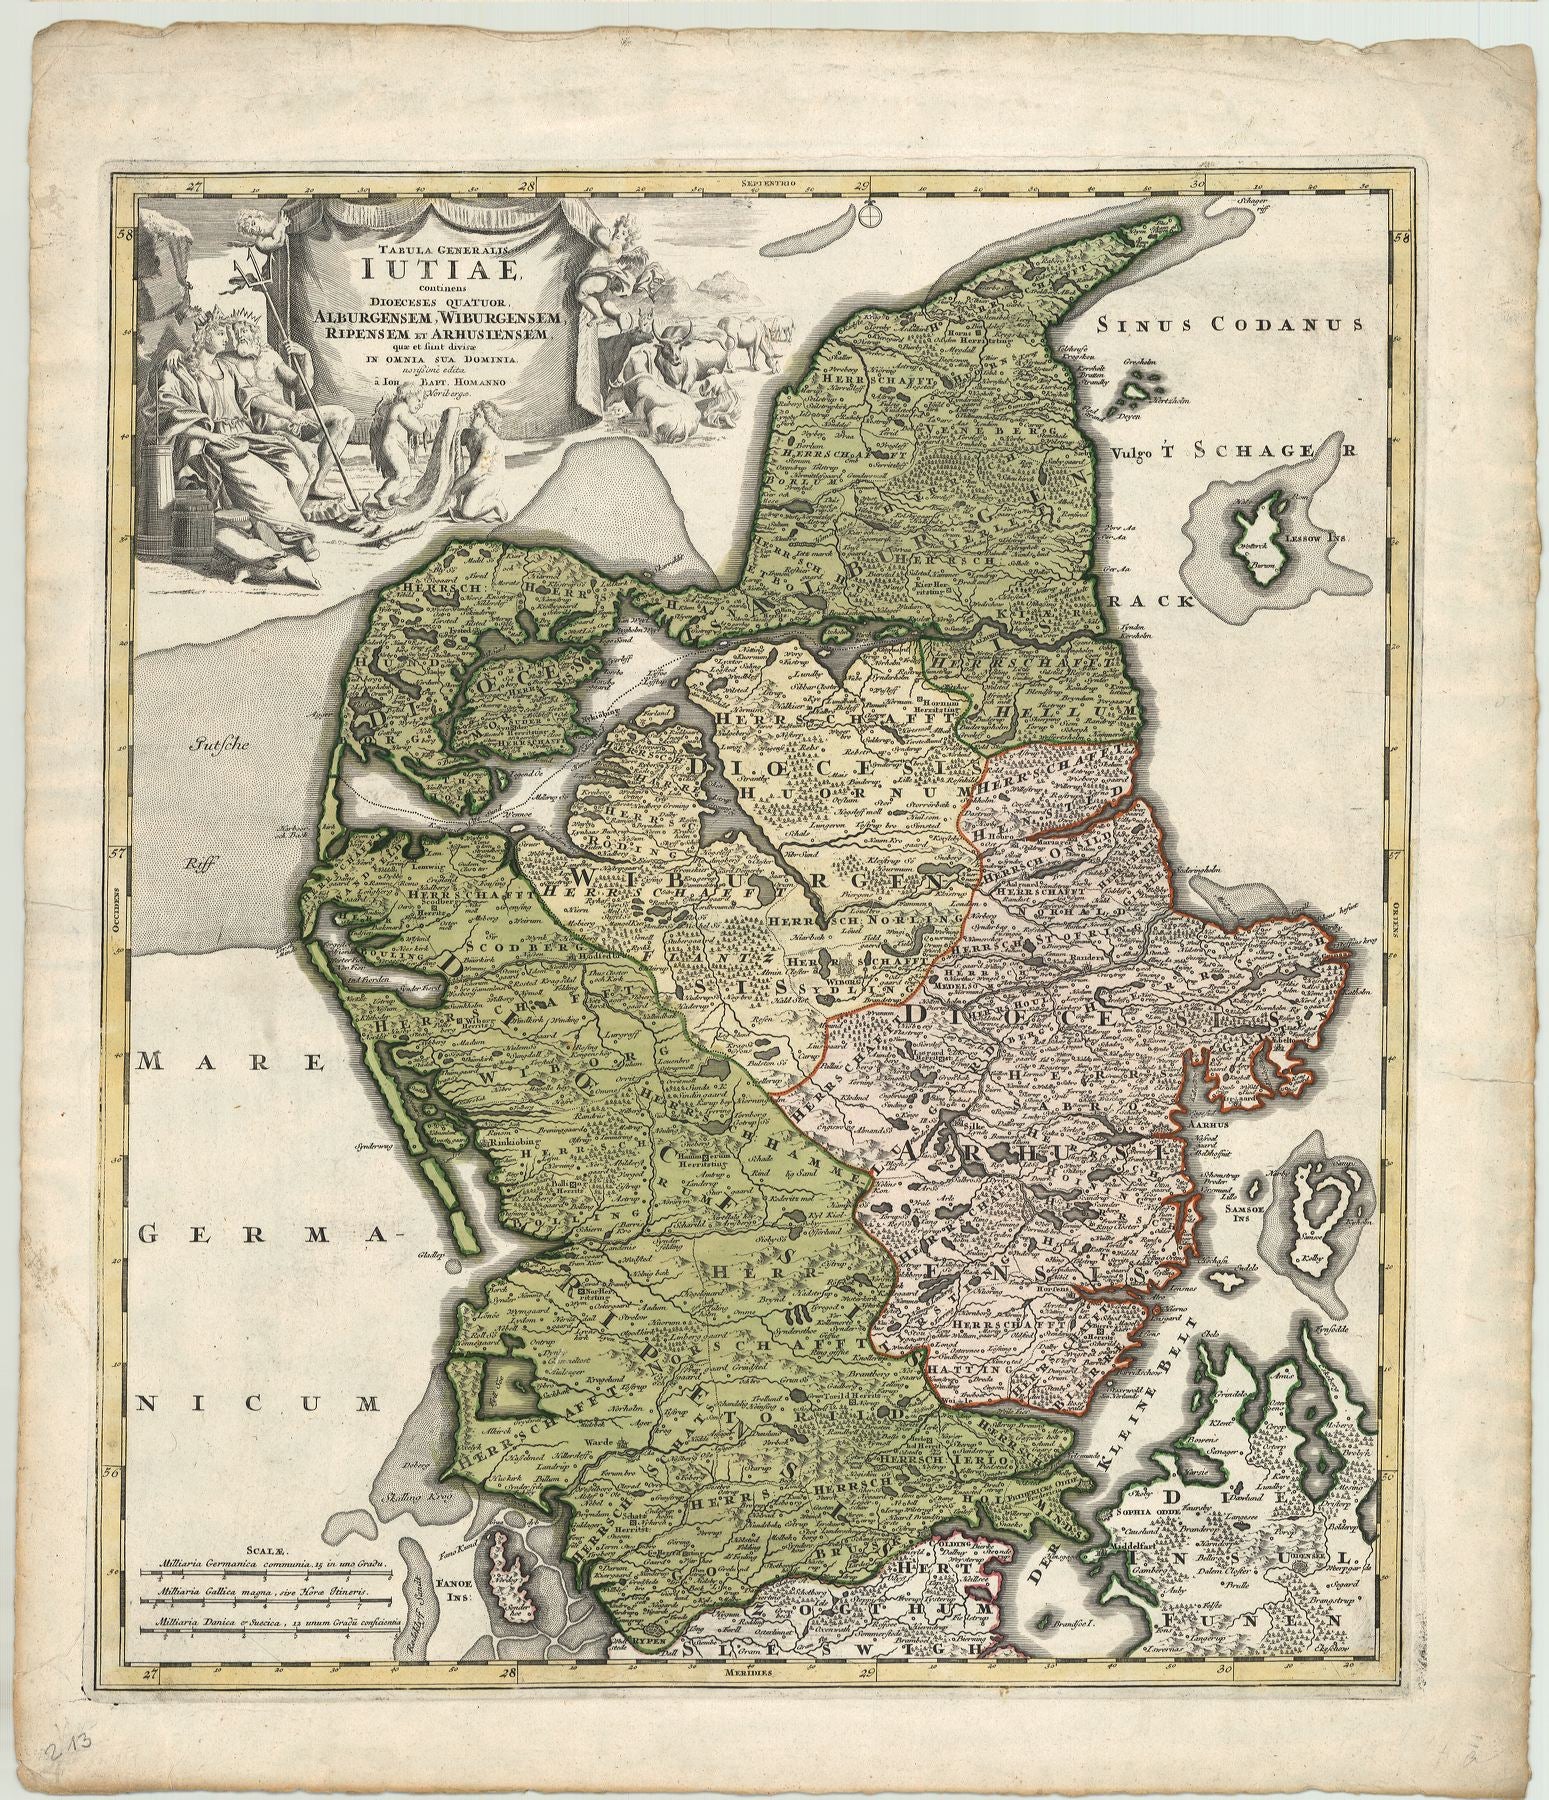 Dänemark / Jütland um das Jahr 1710 von Johann Baptist Homann